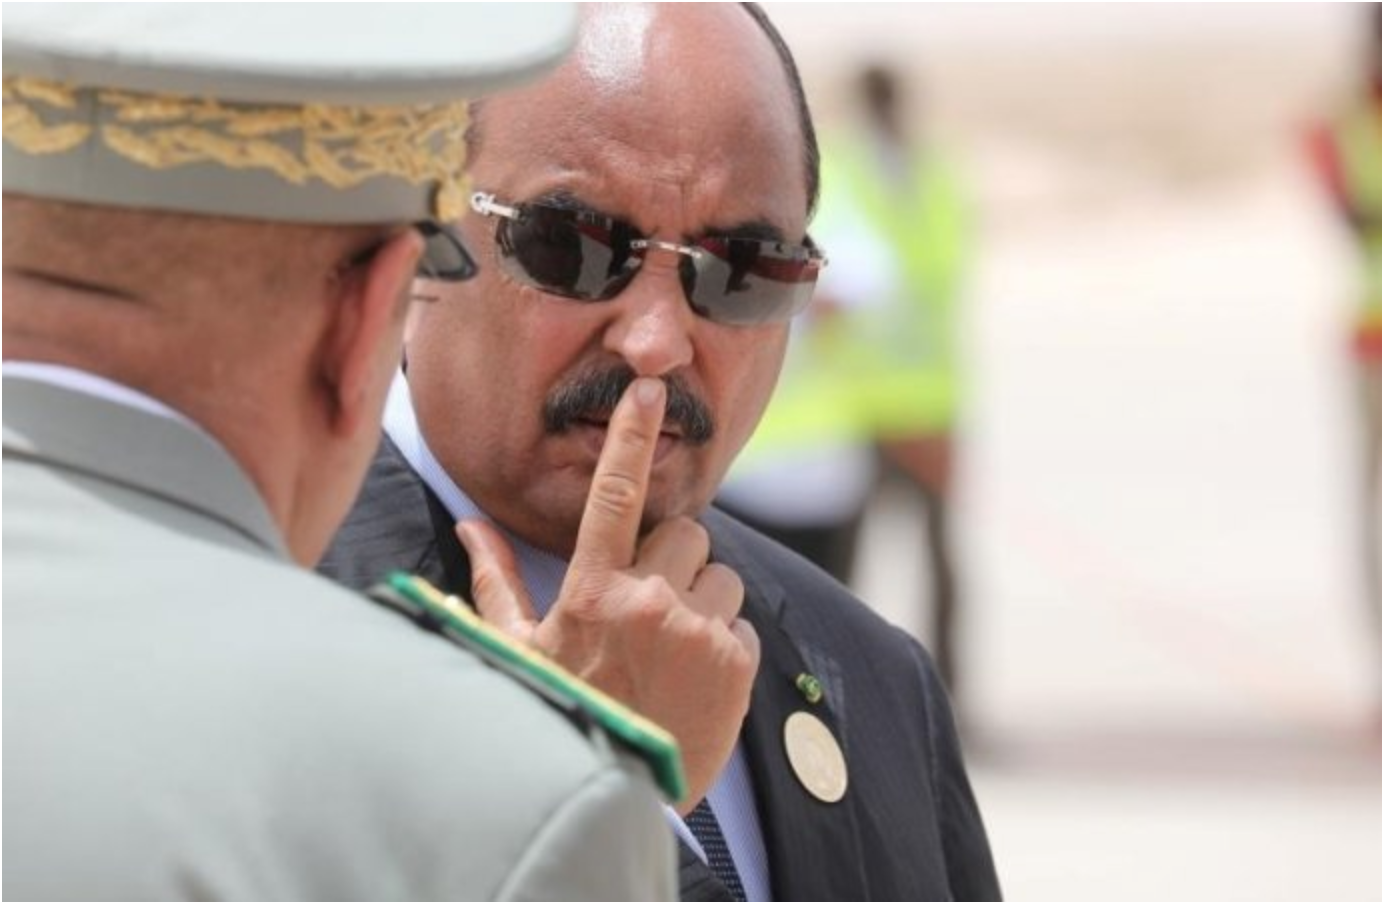 Mauritanie: l’ex-président refuse à nouveau de s’expliquer devant la police